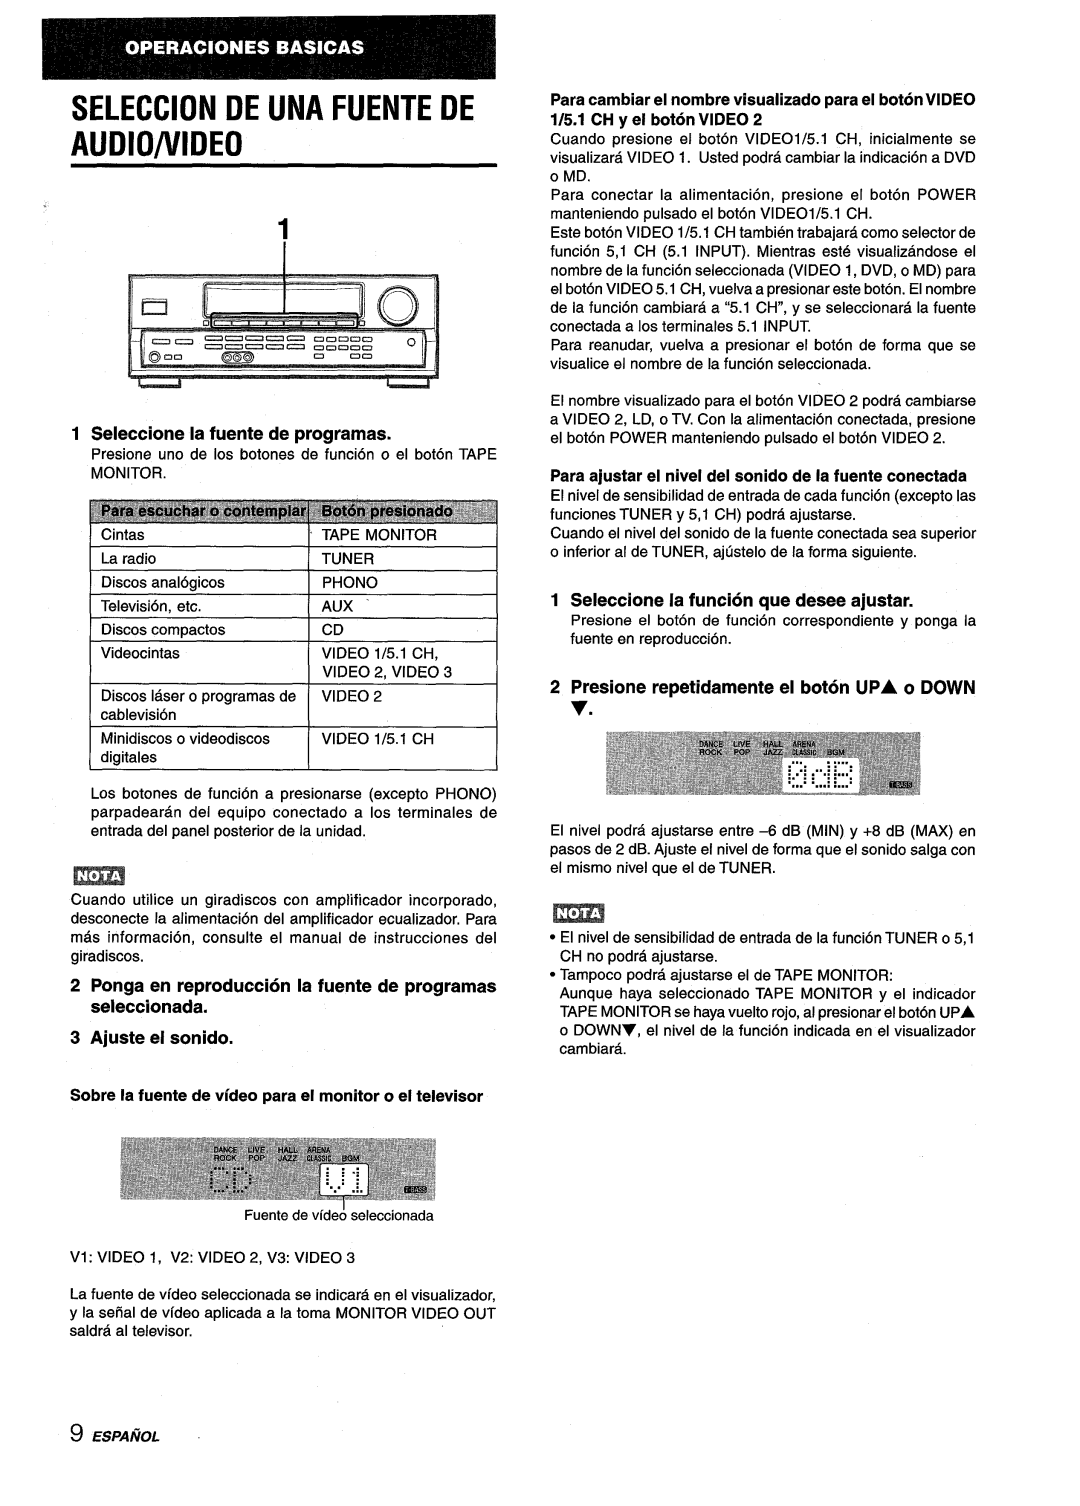 Aiwa AV-D25 manual Seleccion De Una Fuente De Audio/Vide, Seleccione la fuente de programas, Ajuste el sonido 